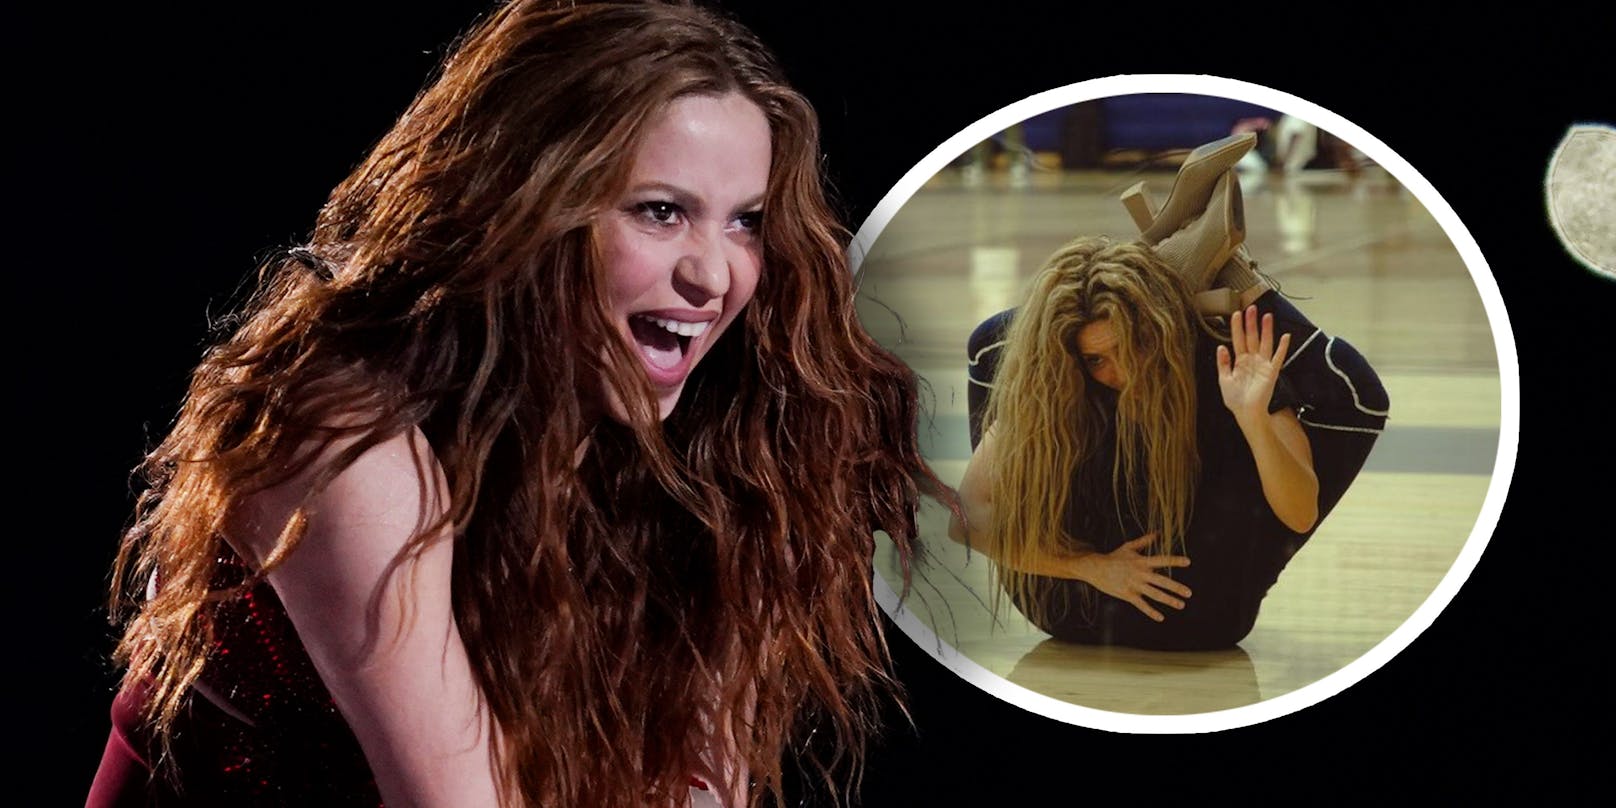 Beweglich – Shakira verwirrt mit skurrilen Verrenkungen